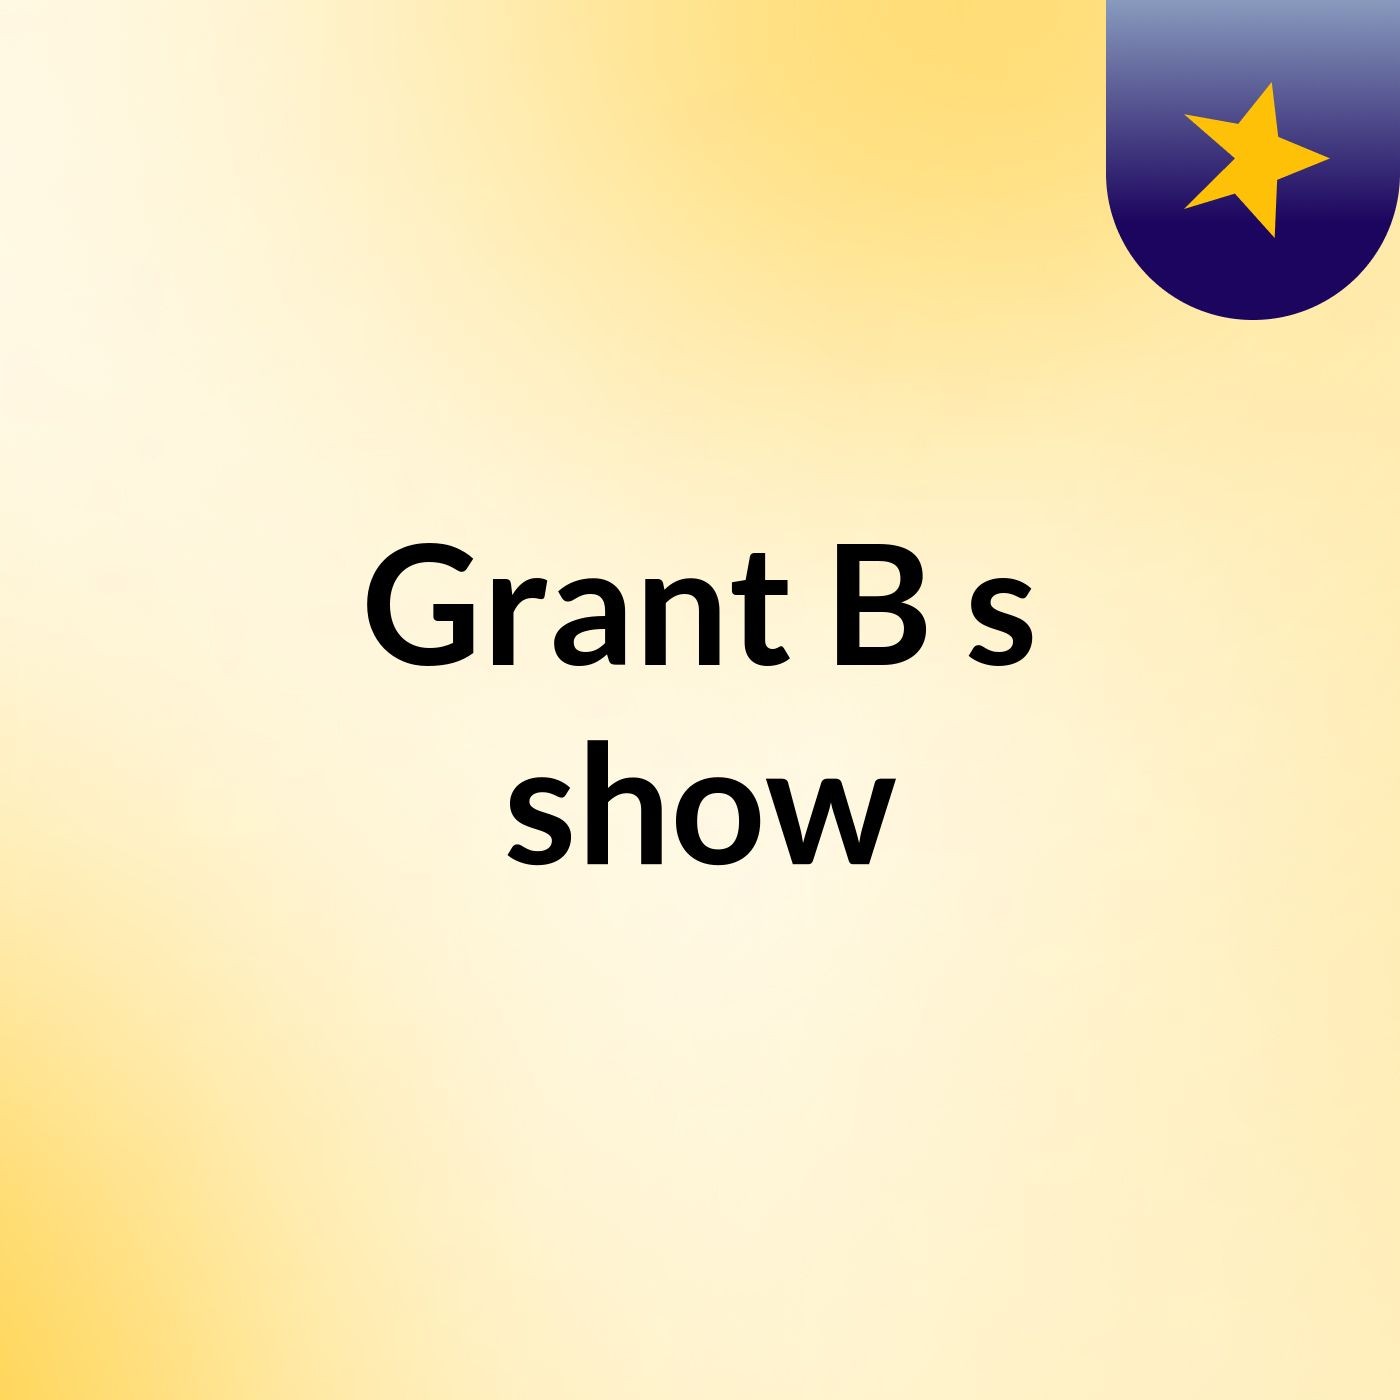 Grant B's show